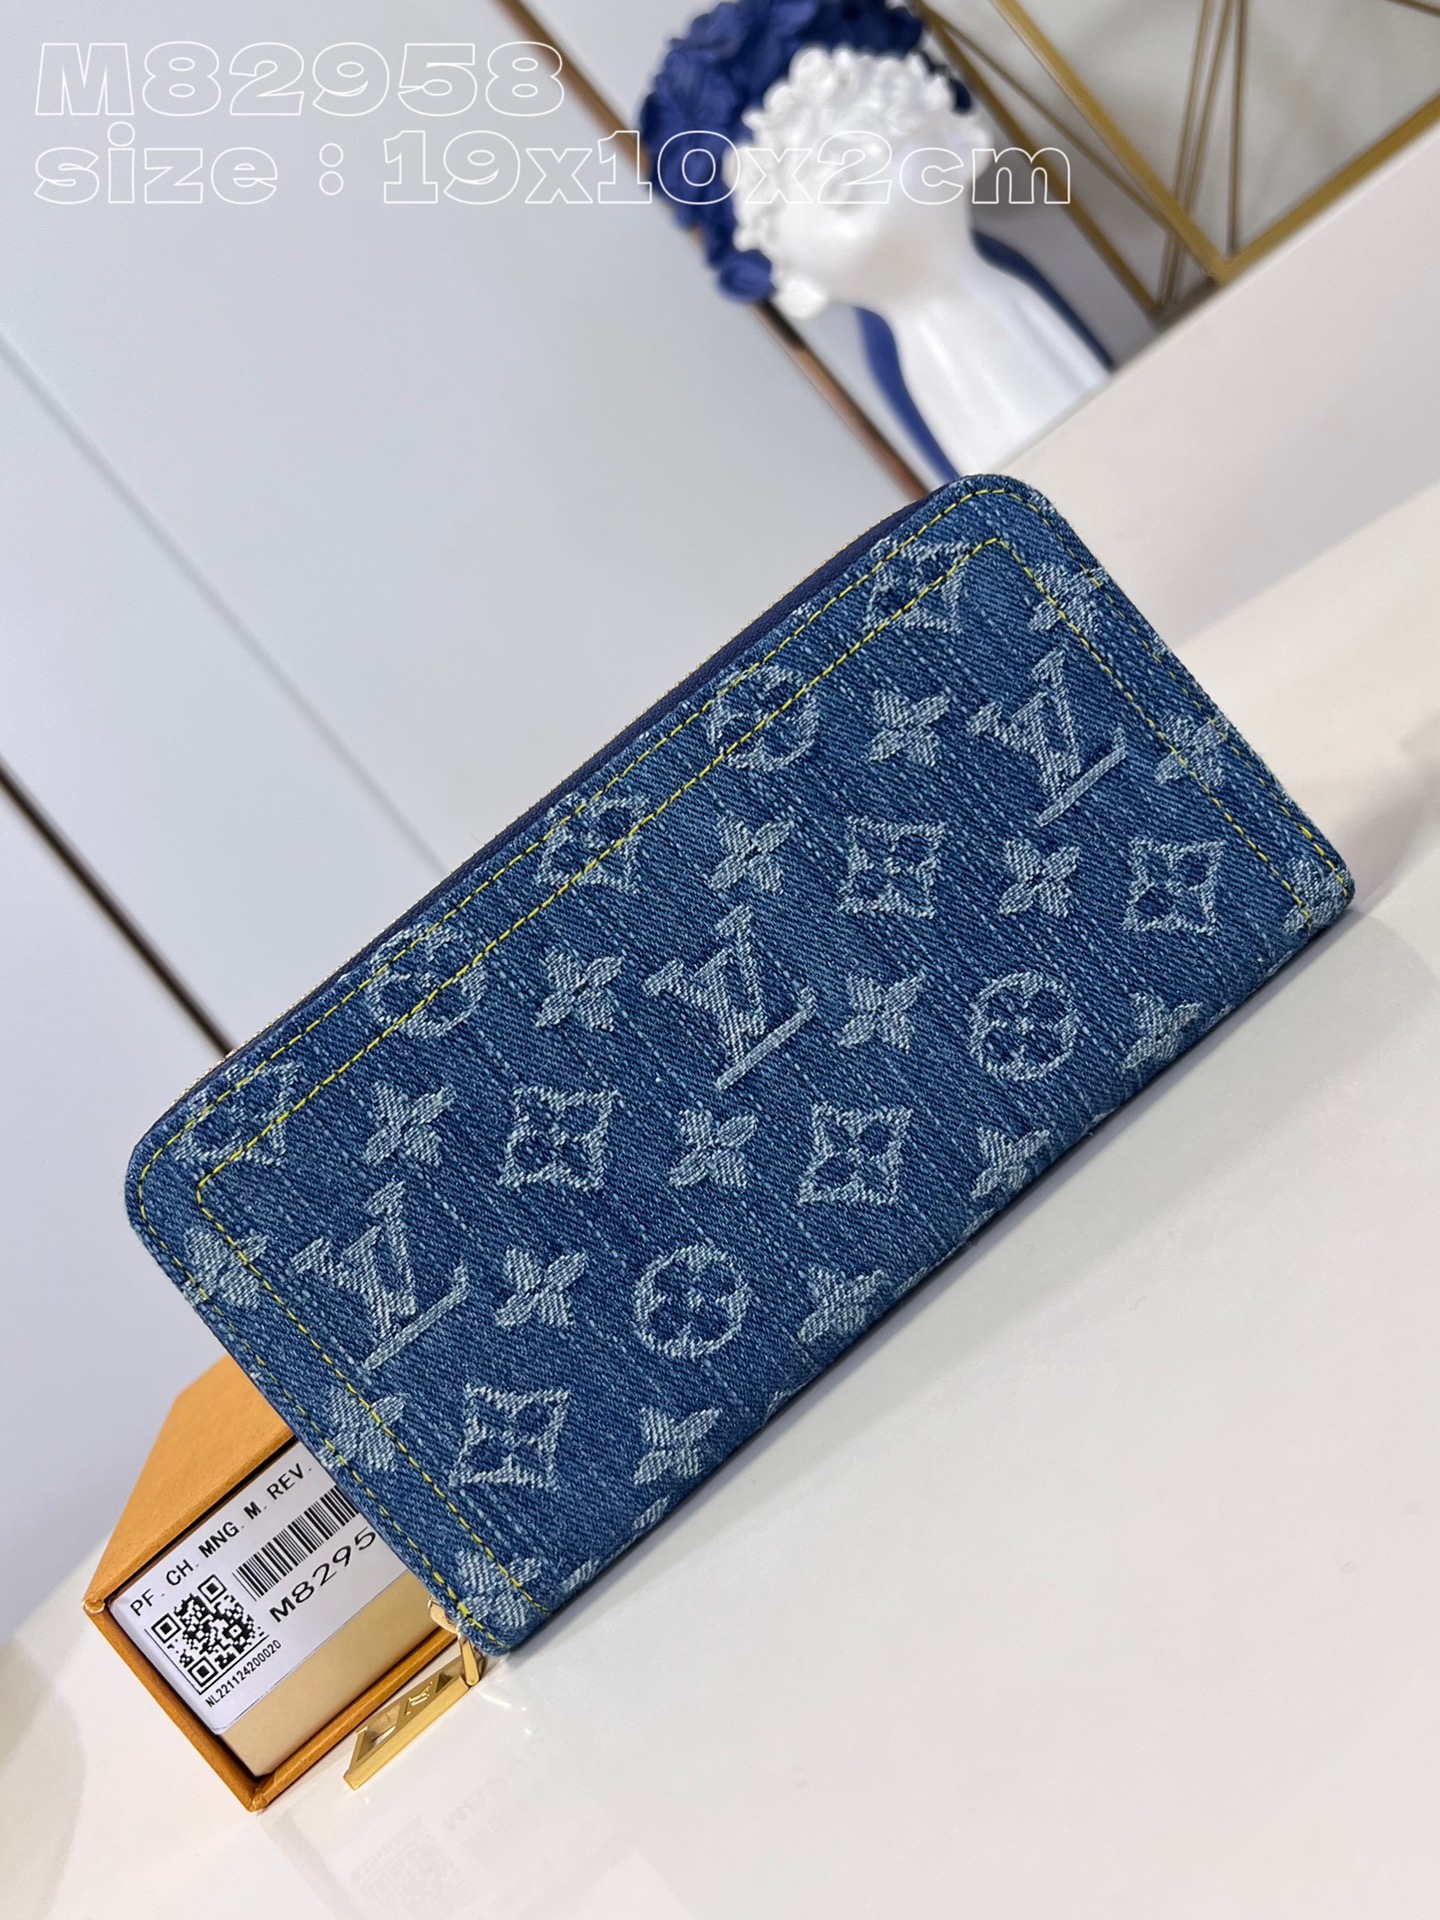 Louis Vuitton Good
 Wallet Weave Cowhide Denim M82958